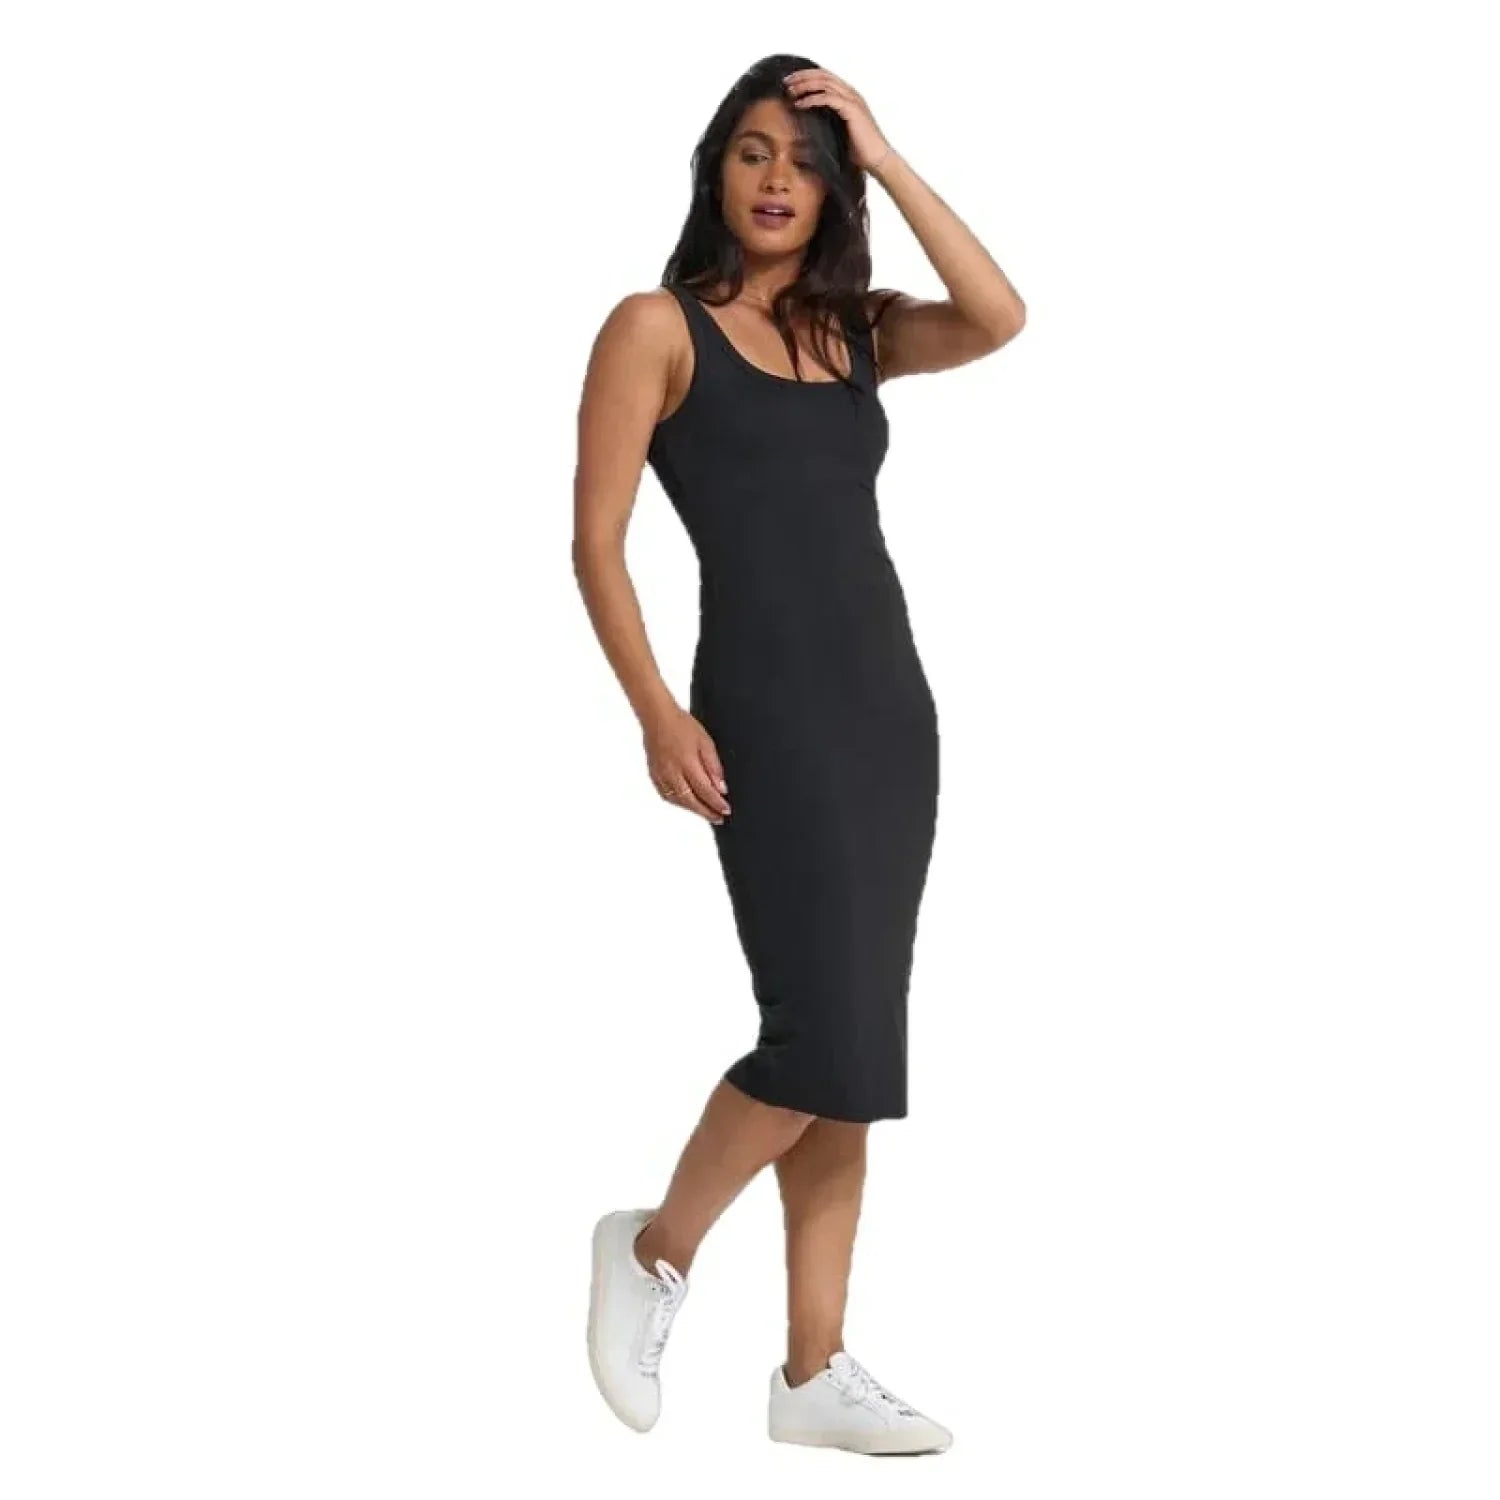 Vuori 02. WOMENS APPAREL - WOMENS DRESS|SKIRT - WOMENS DRESS ACTIVE Women's Halo Essential Dress HBK BLACK HEATHER